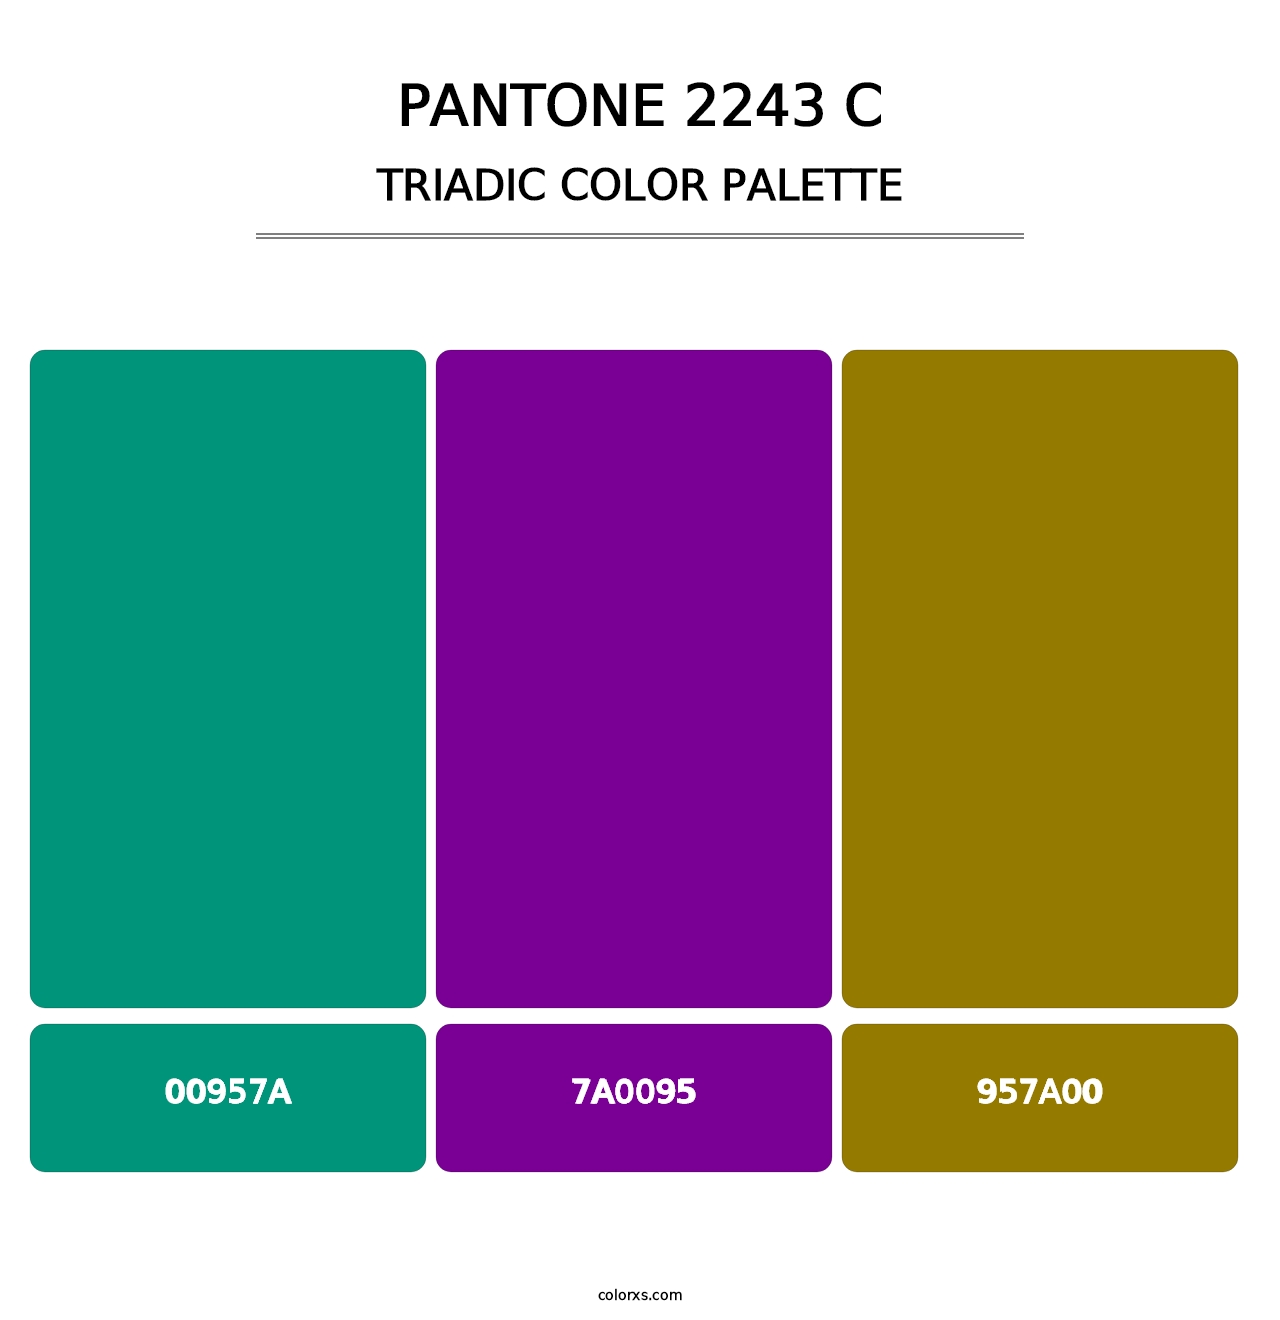 PANTONE 2243 C - Triadic Color Palette